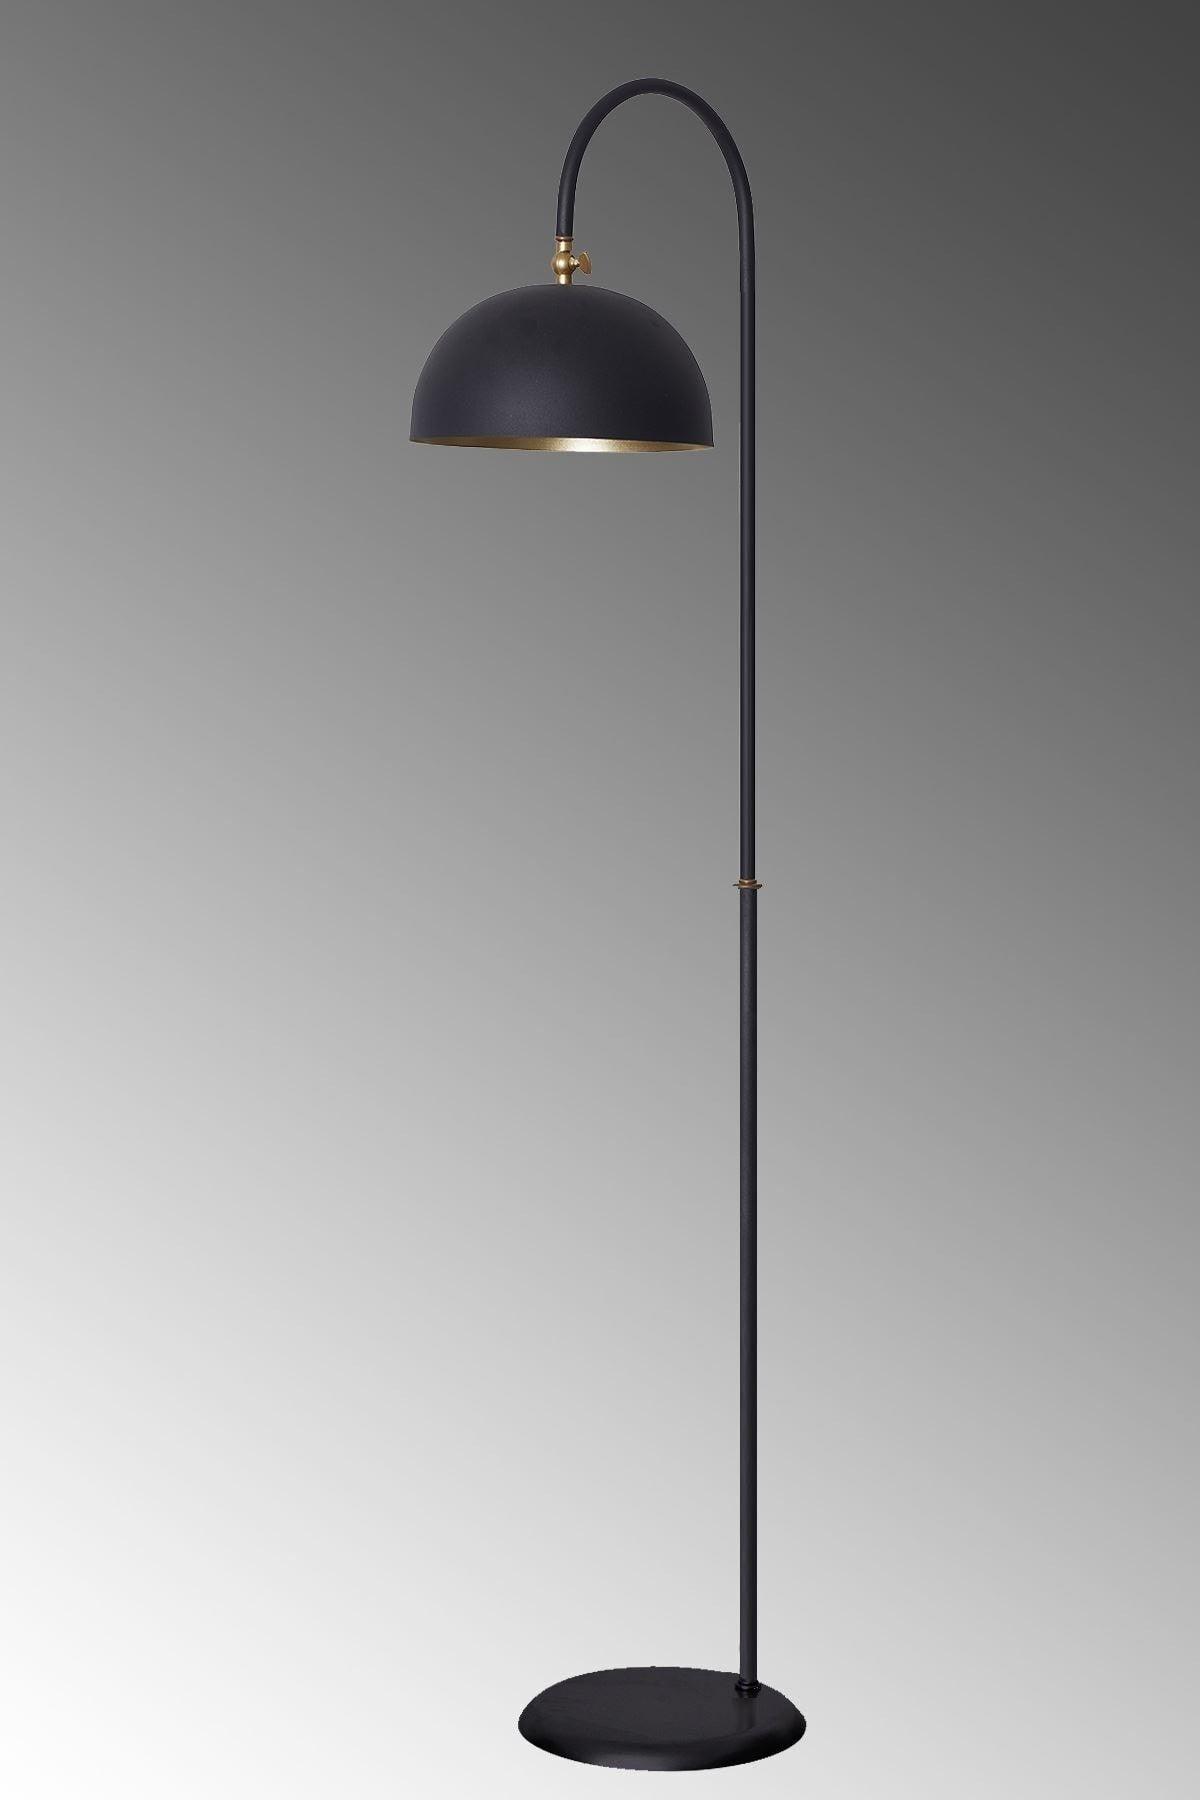 Black Yellow Metal Design Luxury Floor Lighting Floor Lamp - Swordslife